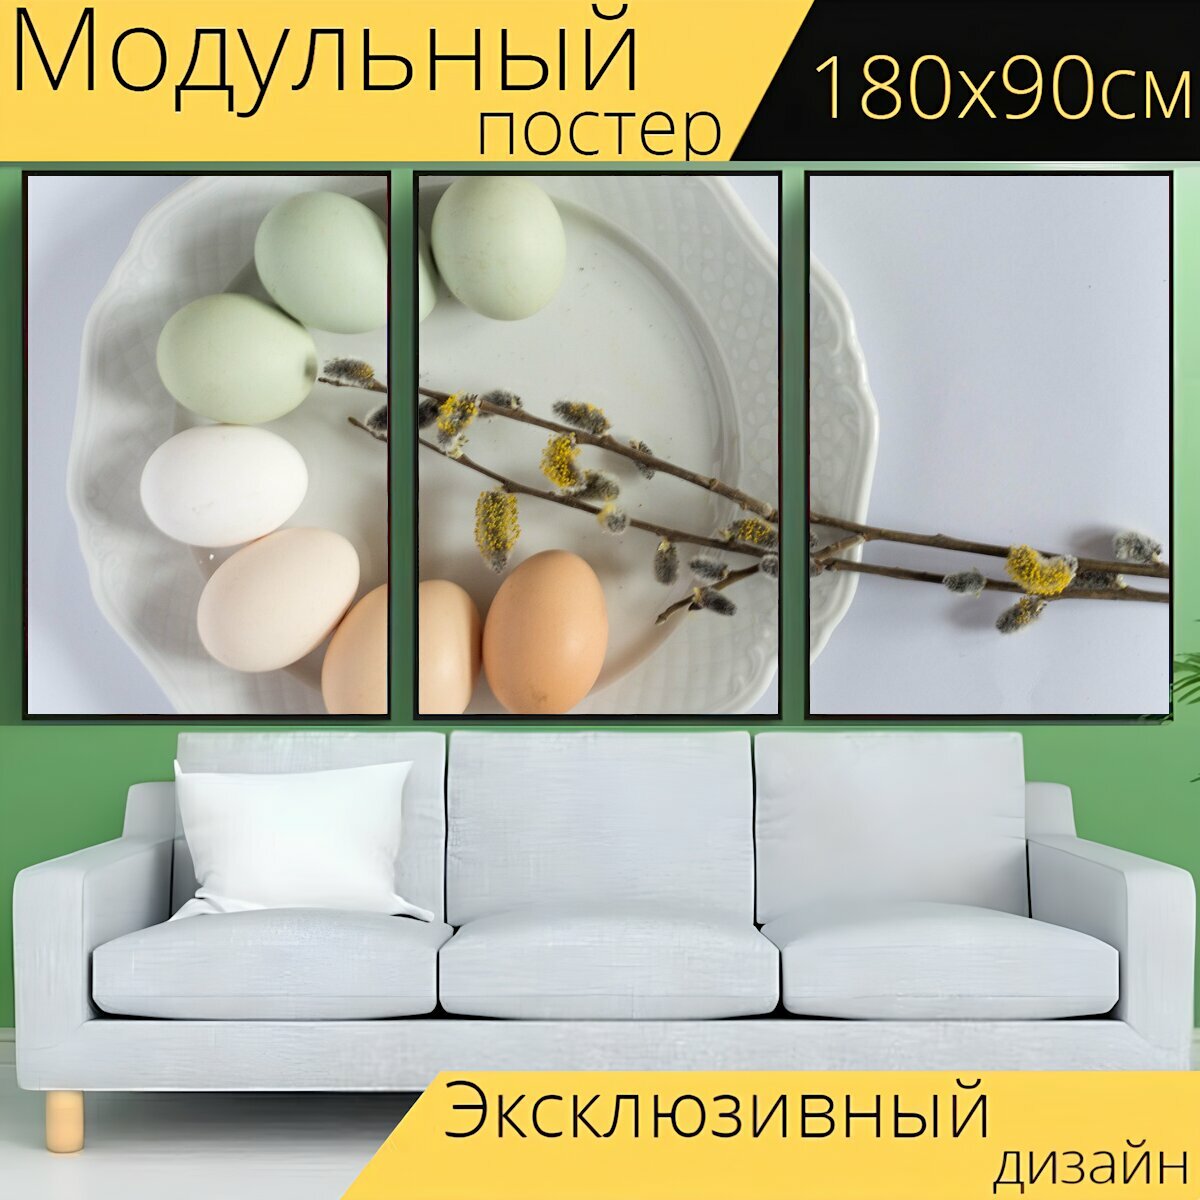 Модульный постер "Пасха, яйца, основание" 180 x 90 см. для интерьера